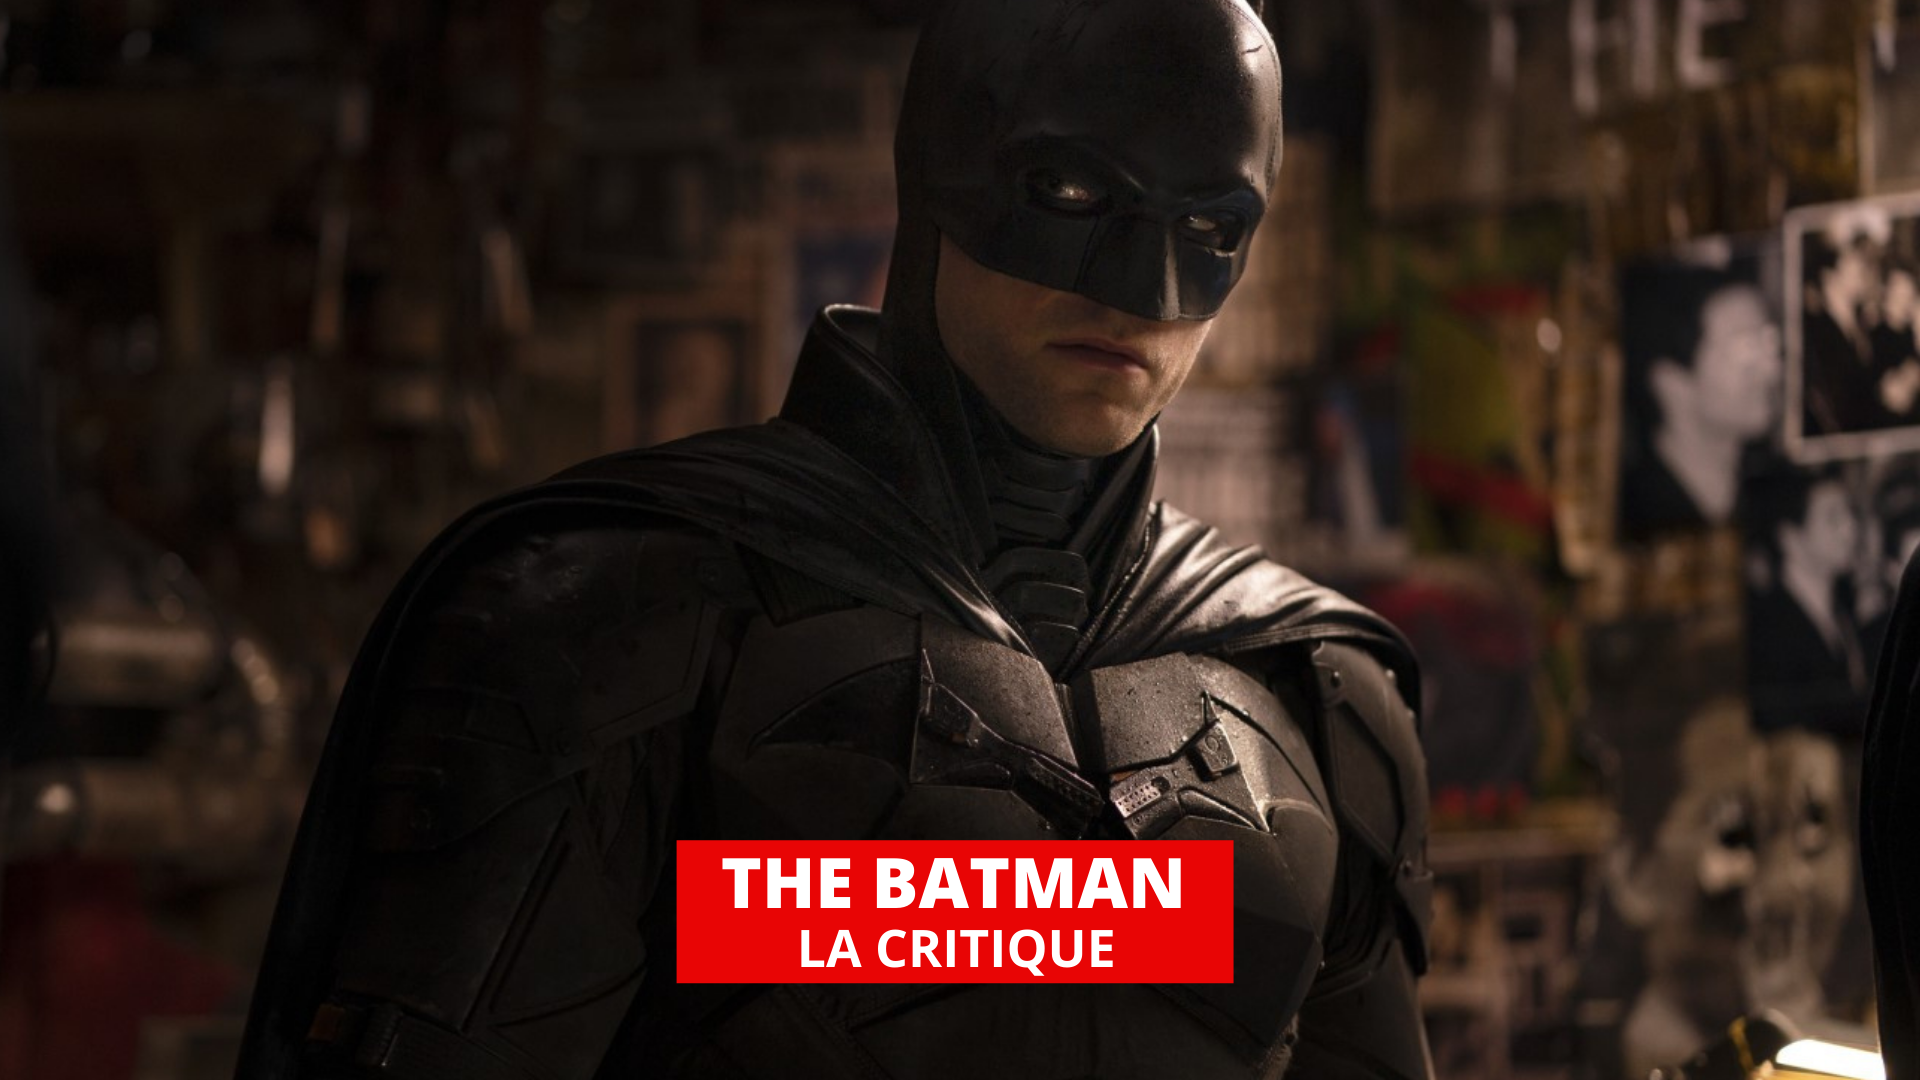 Critique de The Batman (Film, 2022) - CinéSérie